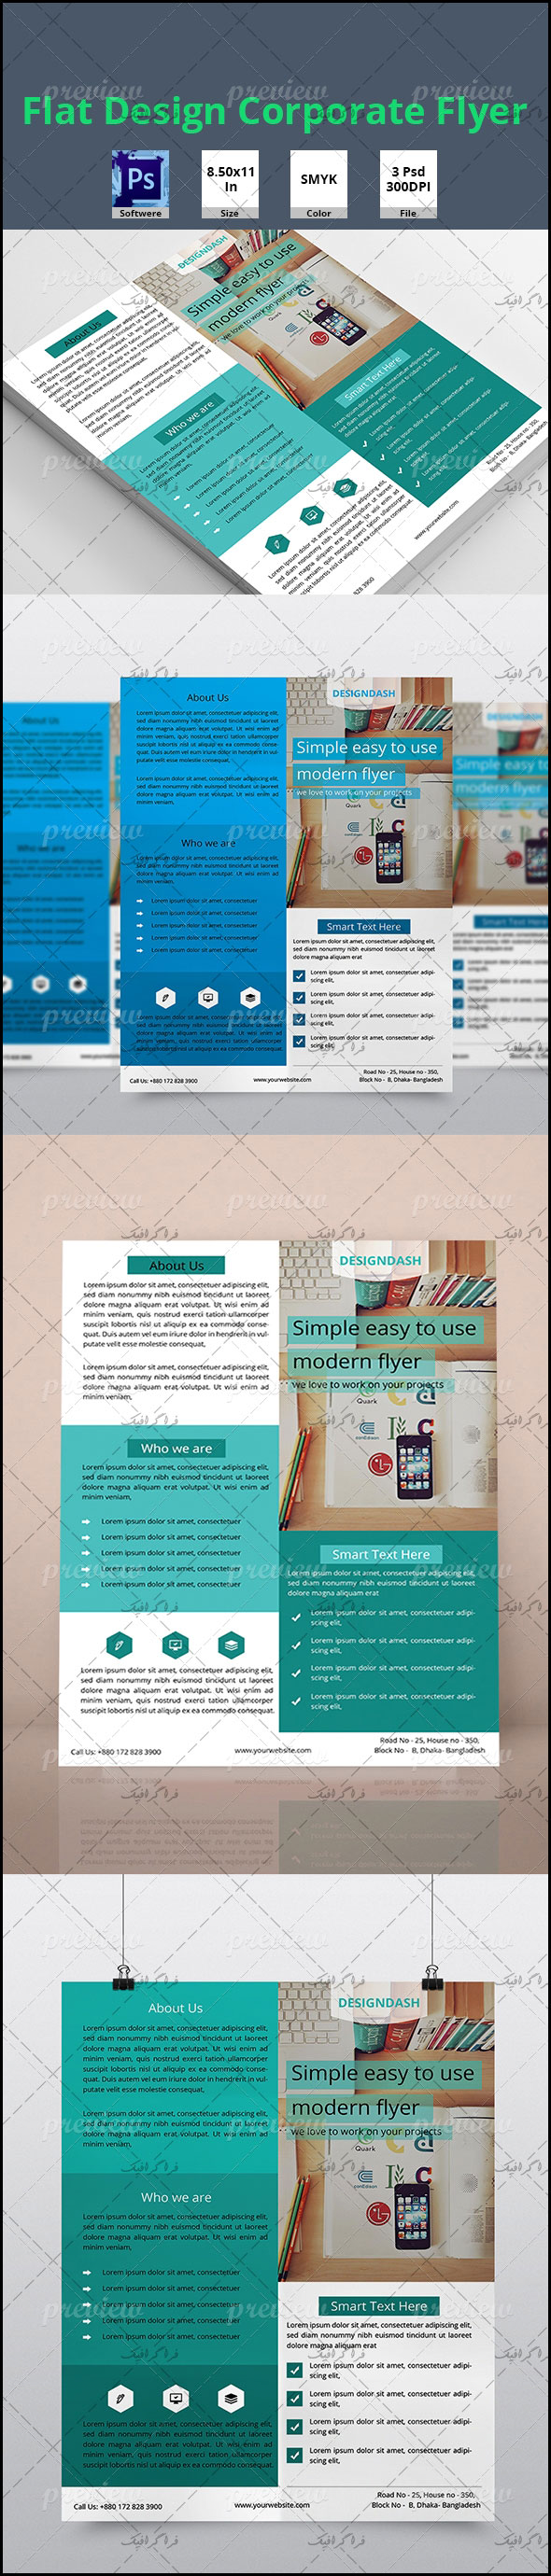 فایل لایه باز پوستر تجاری و شرکتی - طرح فلت